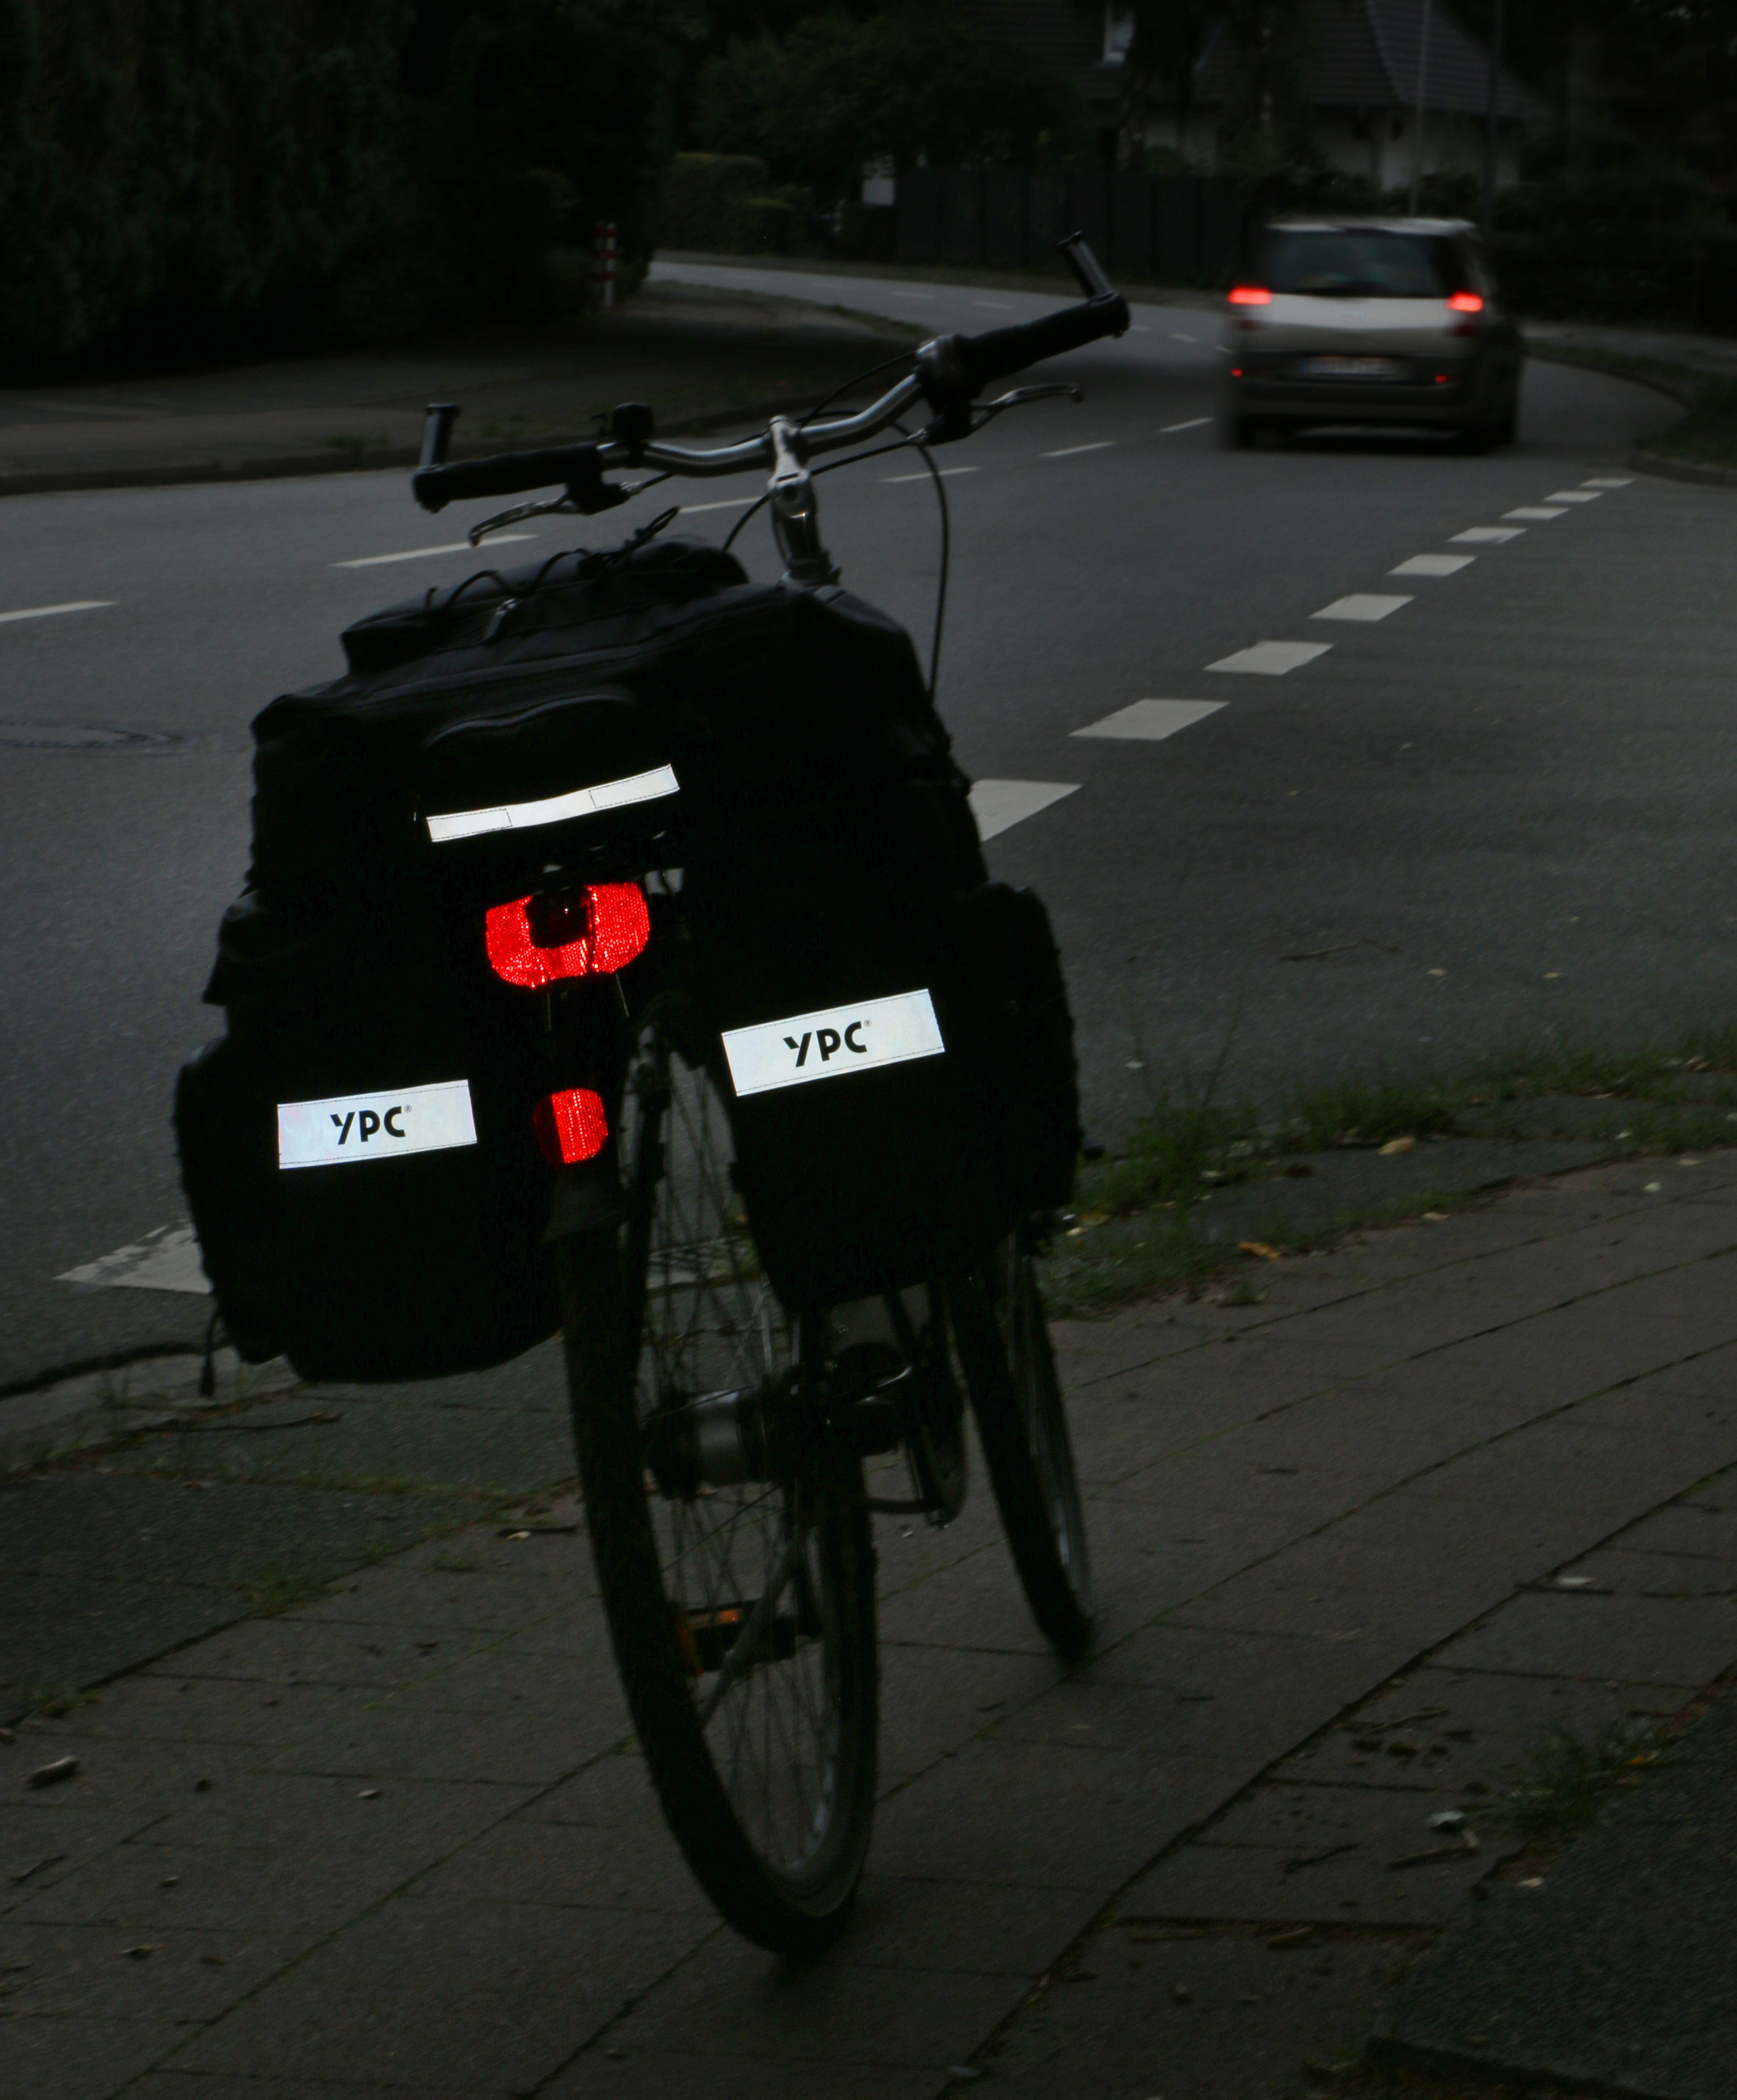 "Voyager" 3 in 1 Fahrradtasche für Gepäckträger XXL, 65L, wasserdicht, 55x50x40cm, schwarz